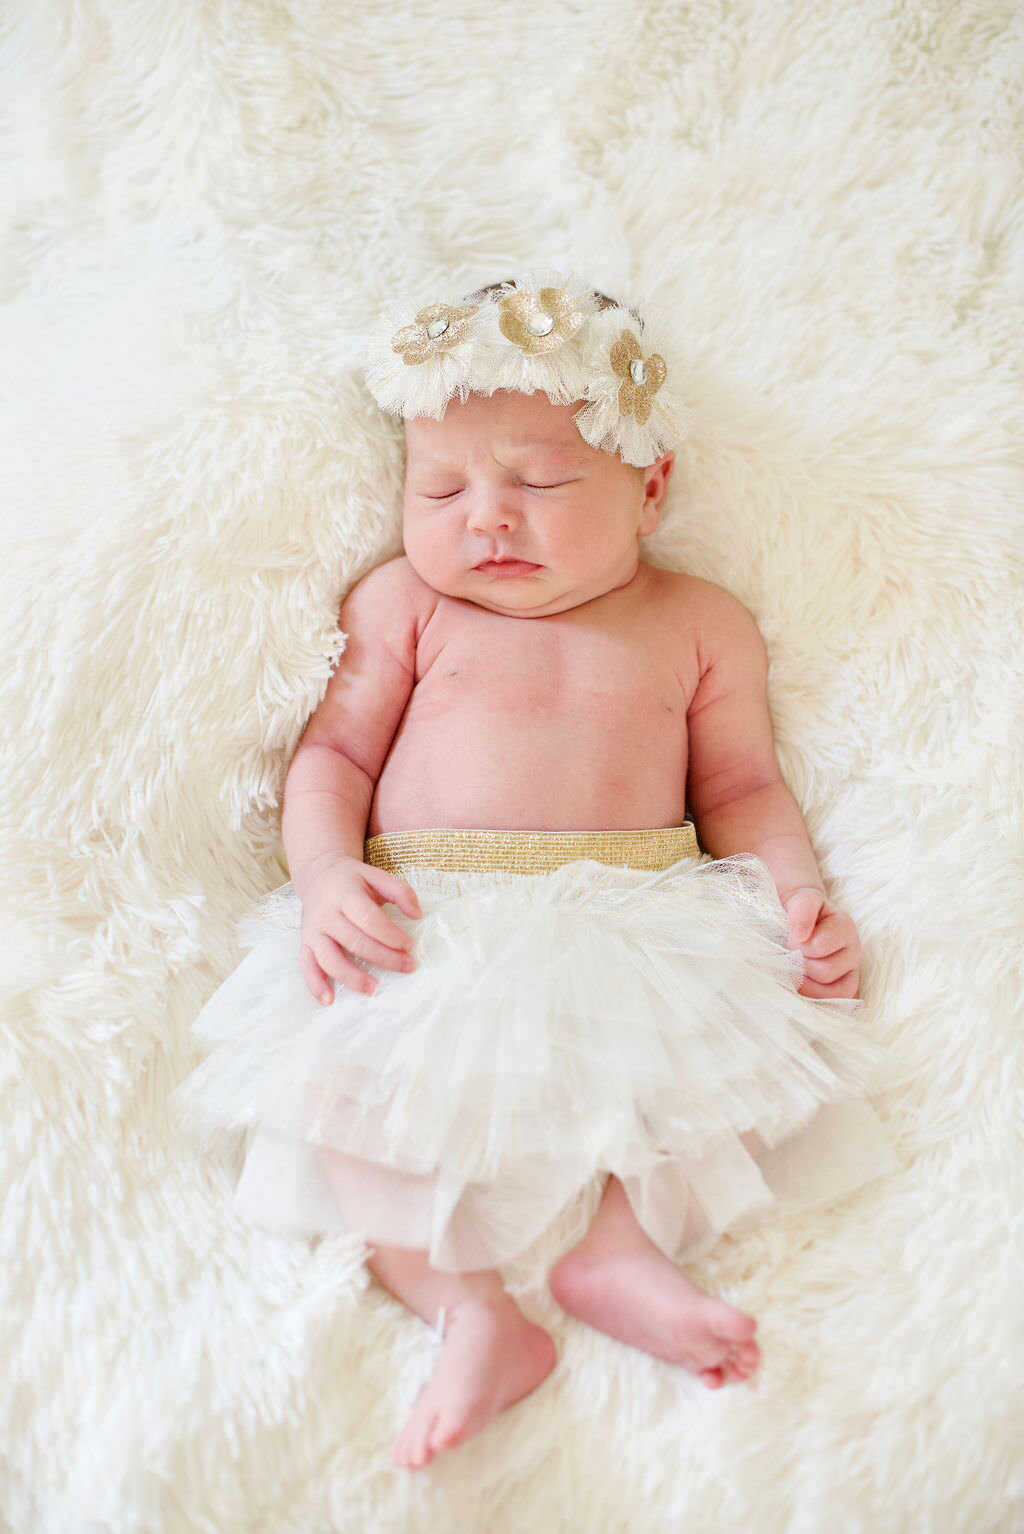 A newborn baby in a white tutu.